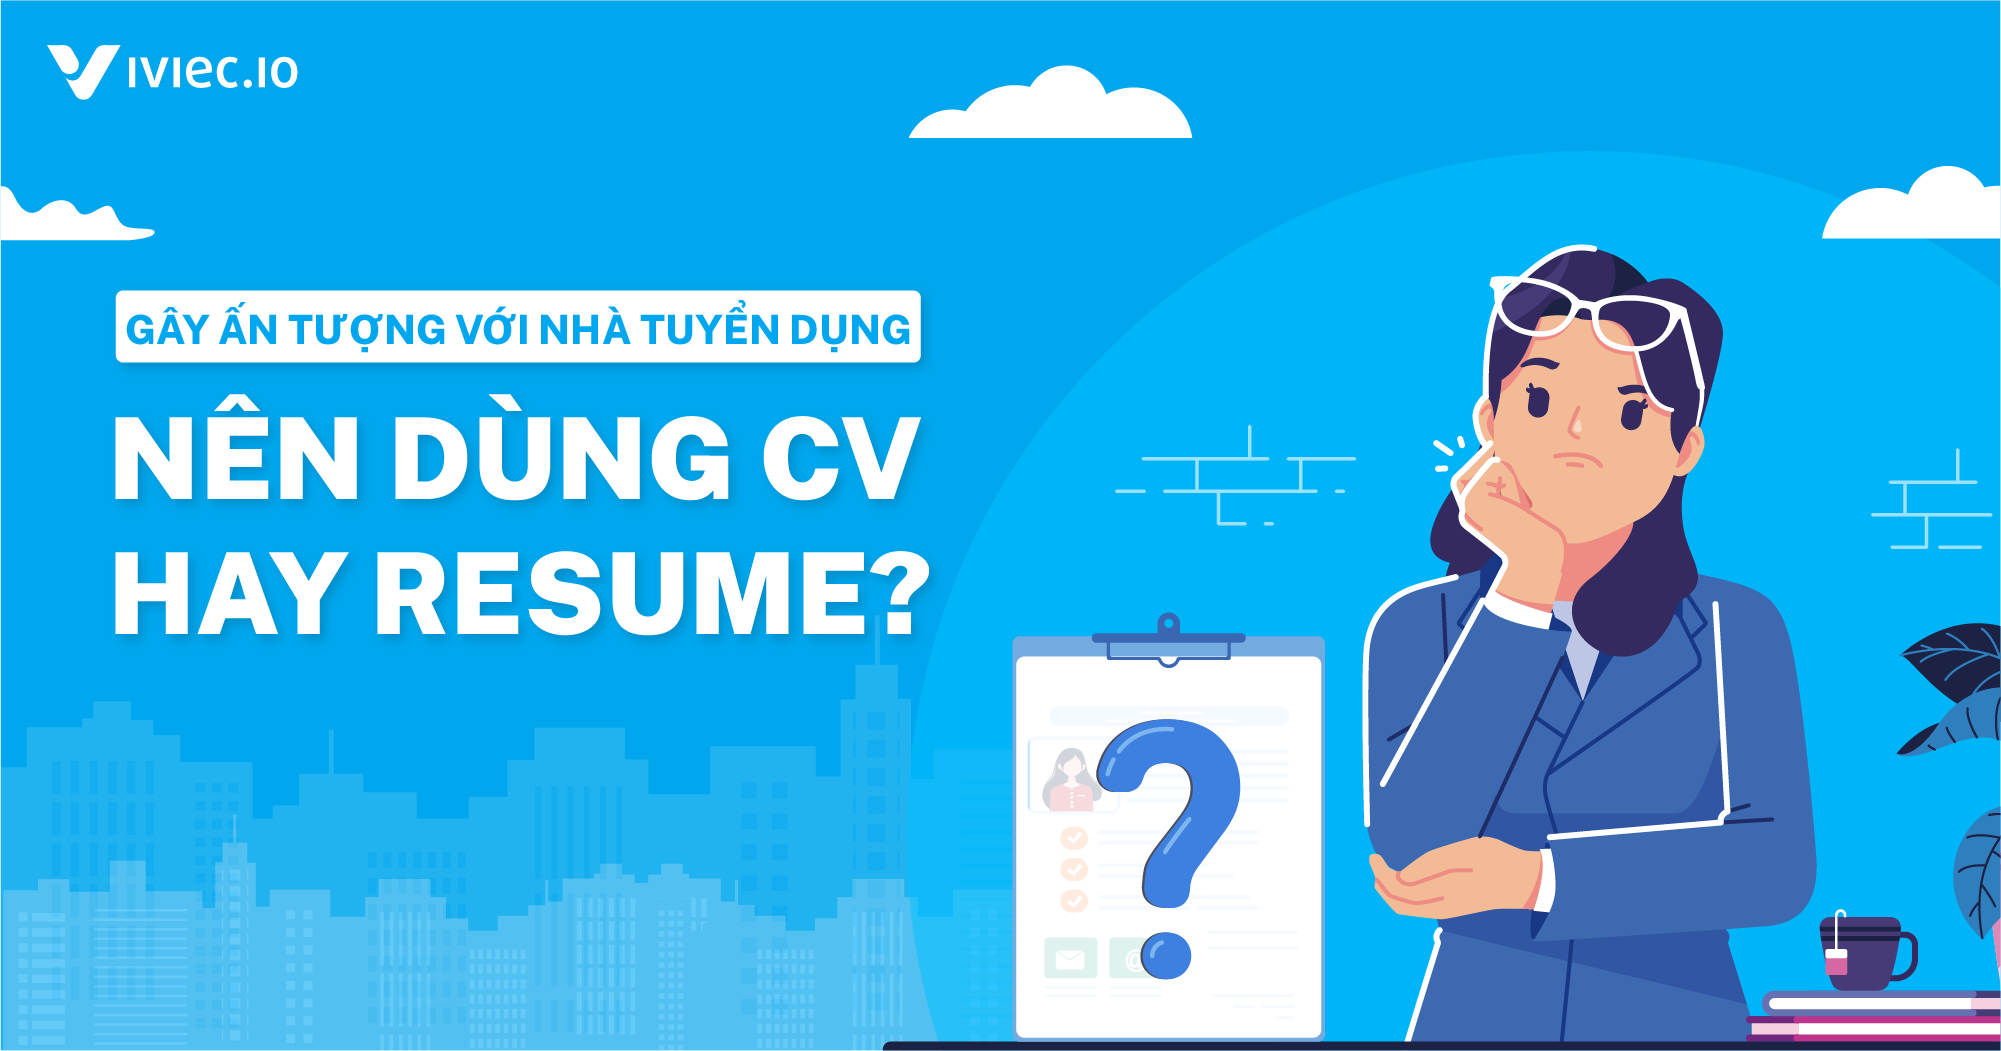 CV và Resume là gì? Khi ứng tuyển nên dùng CV hay Resume? 